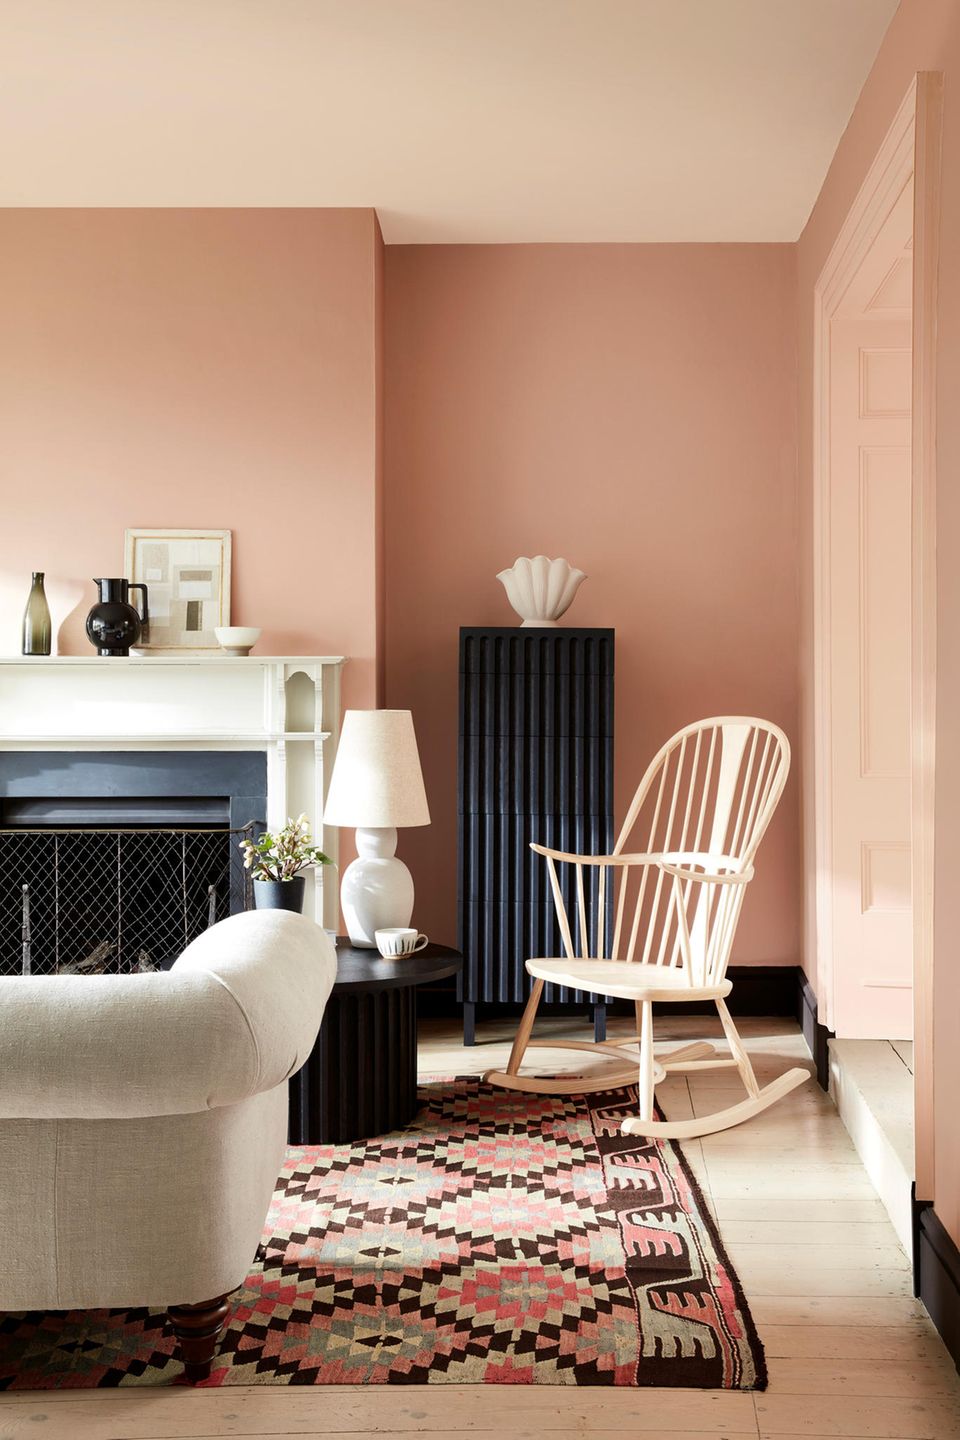 Wohnzimmer mit rosefarbener Wand hellen Möbeln und schwarzen Wohnelementen wie Kamin und Heizung